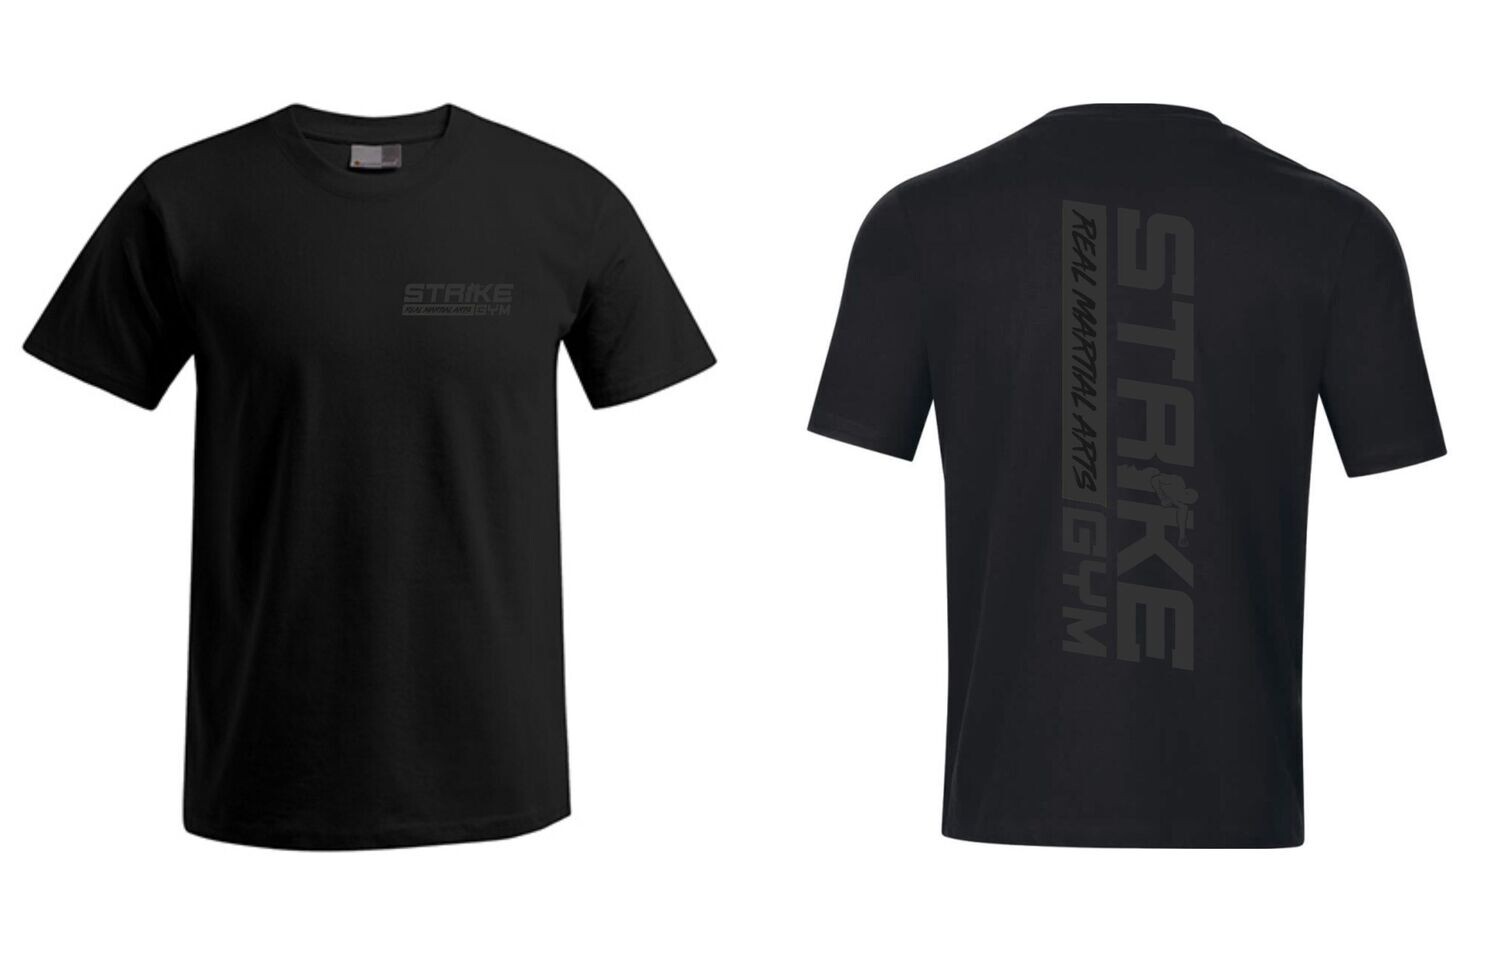 Herren T-Shirt Strike Gym front and back, Farben: schwarz/schwarz